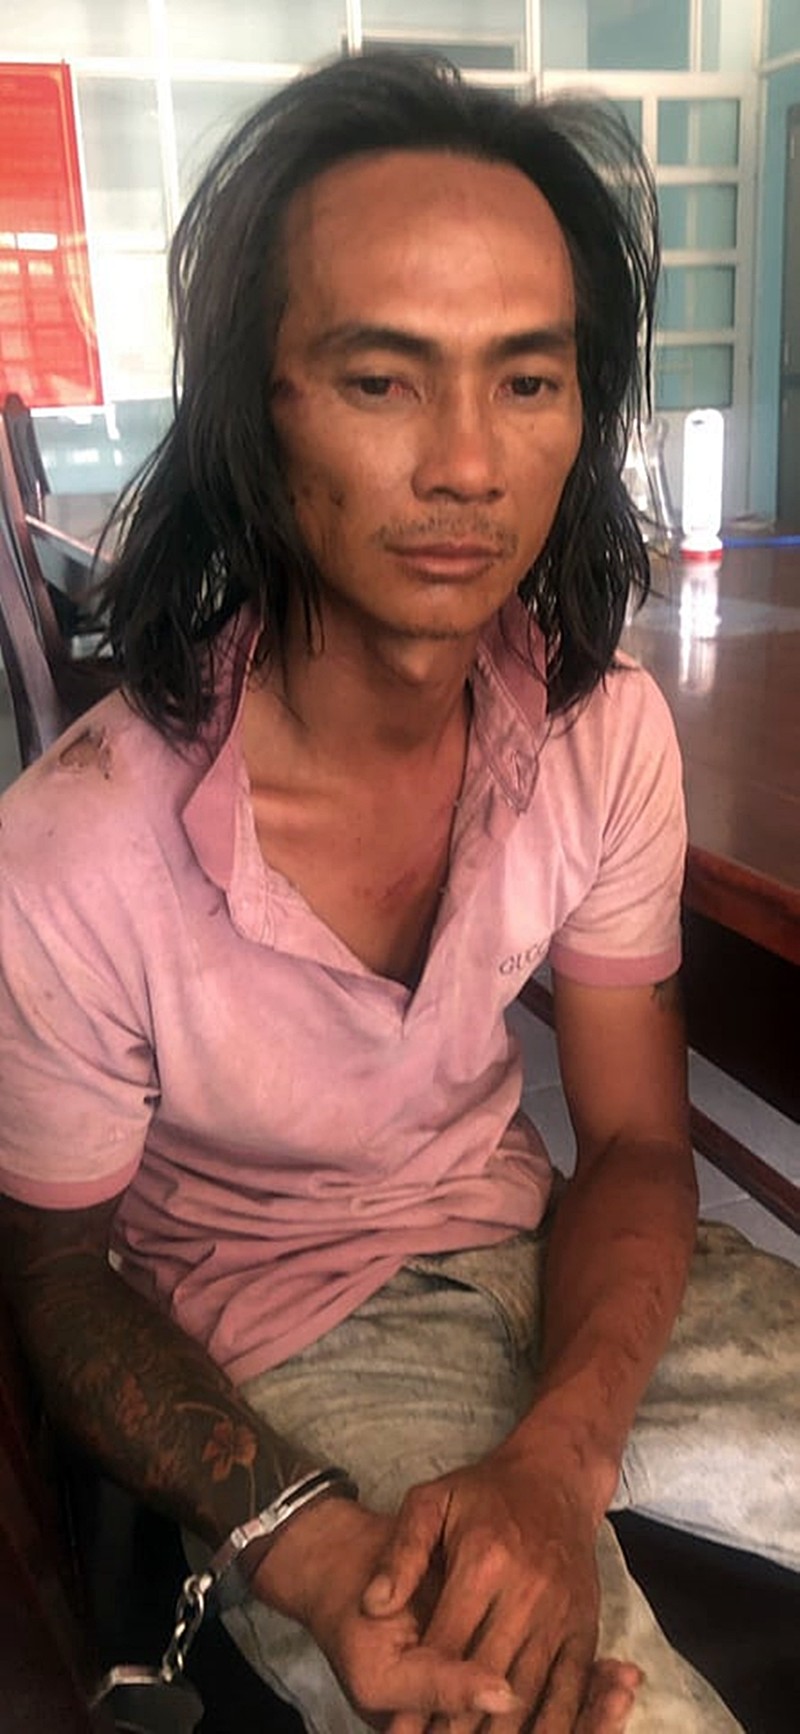 Phụ hồ sát hại chủ nhà trong tiệc mừng công bị bắt ở Đồng Nai - ảnh 1